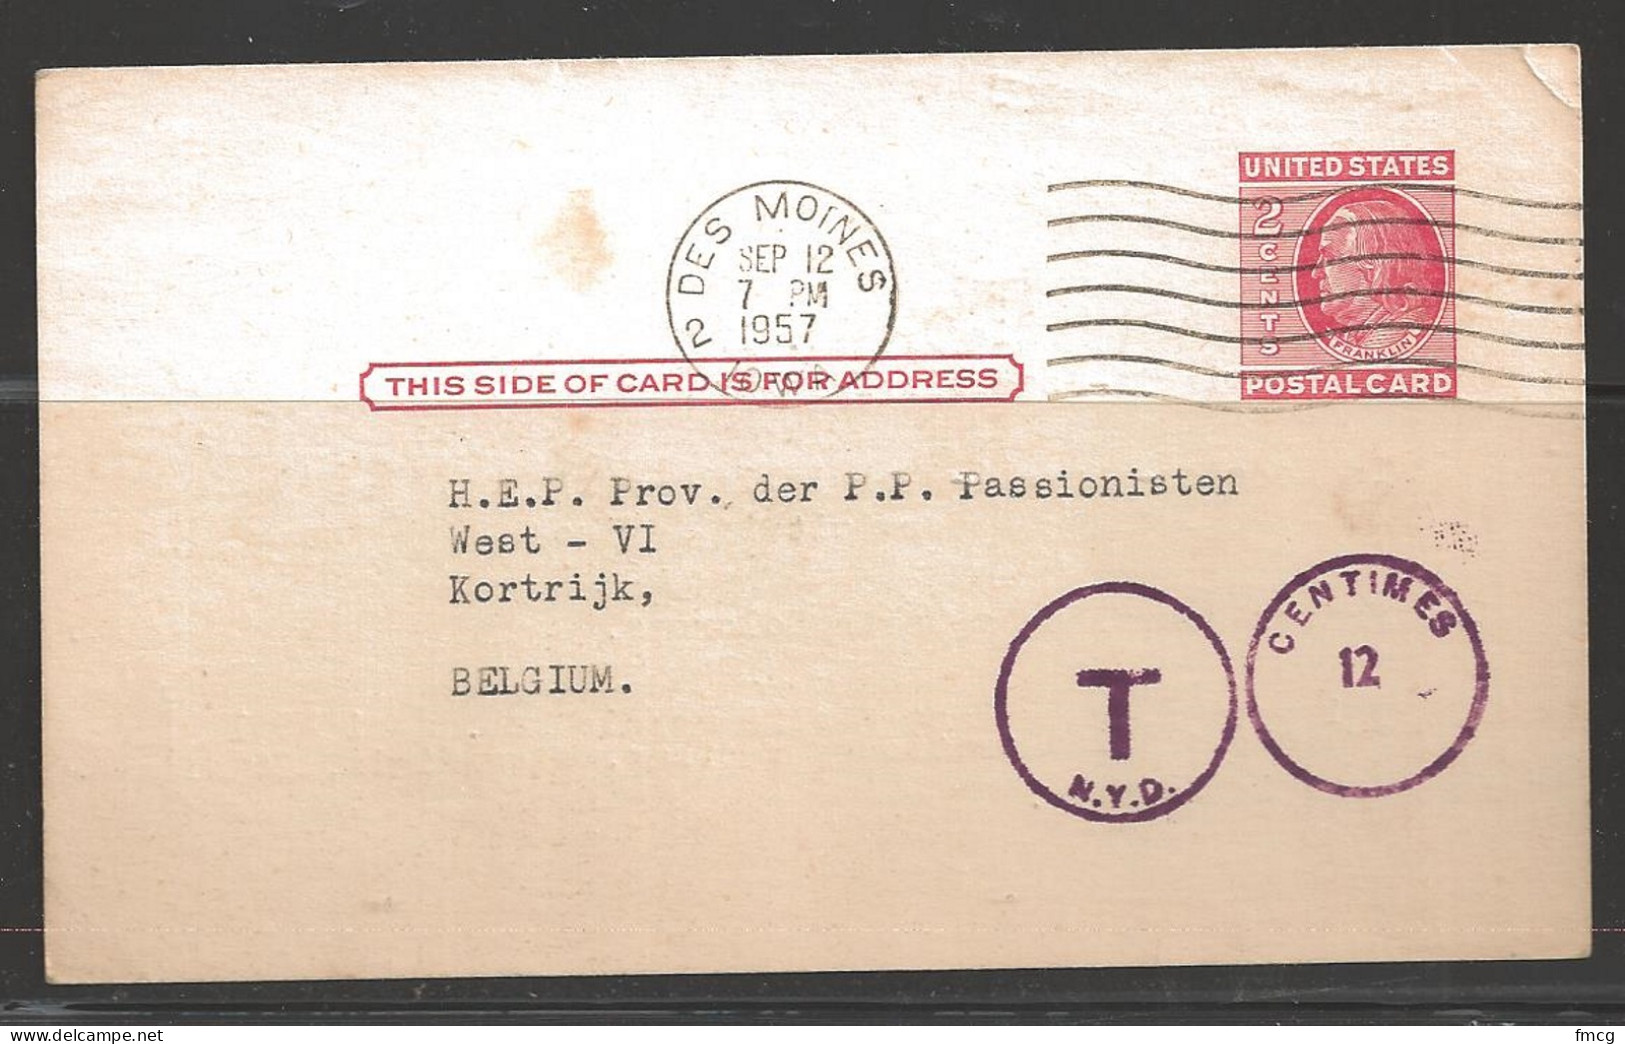 1957 2 Cents Postcard, Des Moines, Mailed To Belgium. "T" N.Y.D., 12 Cent. - Storia Postale